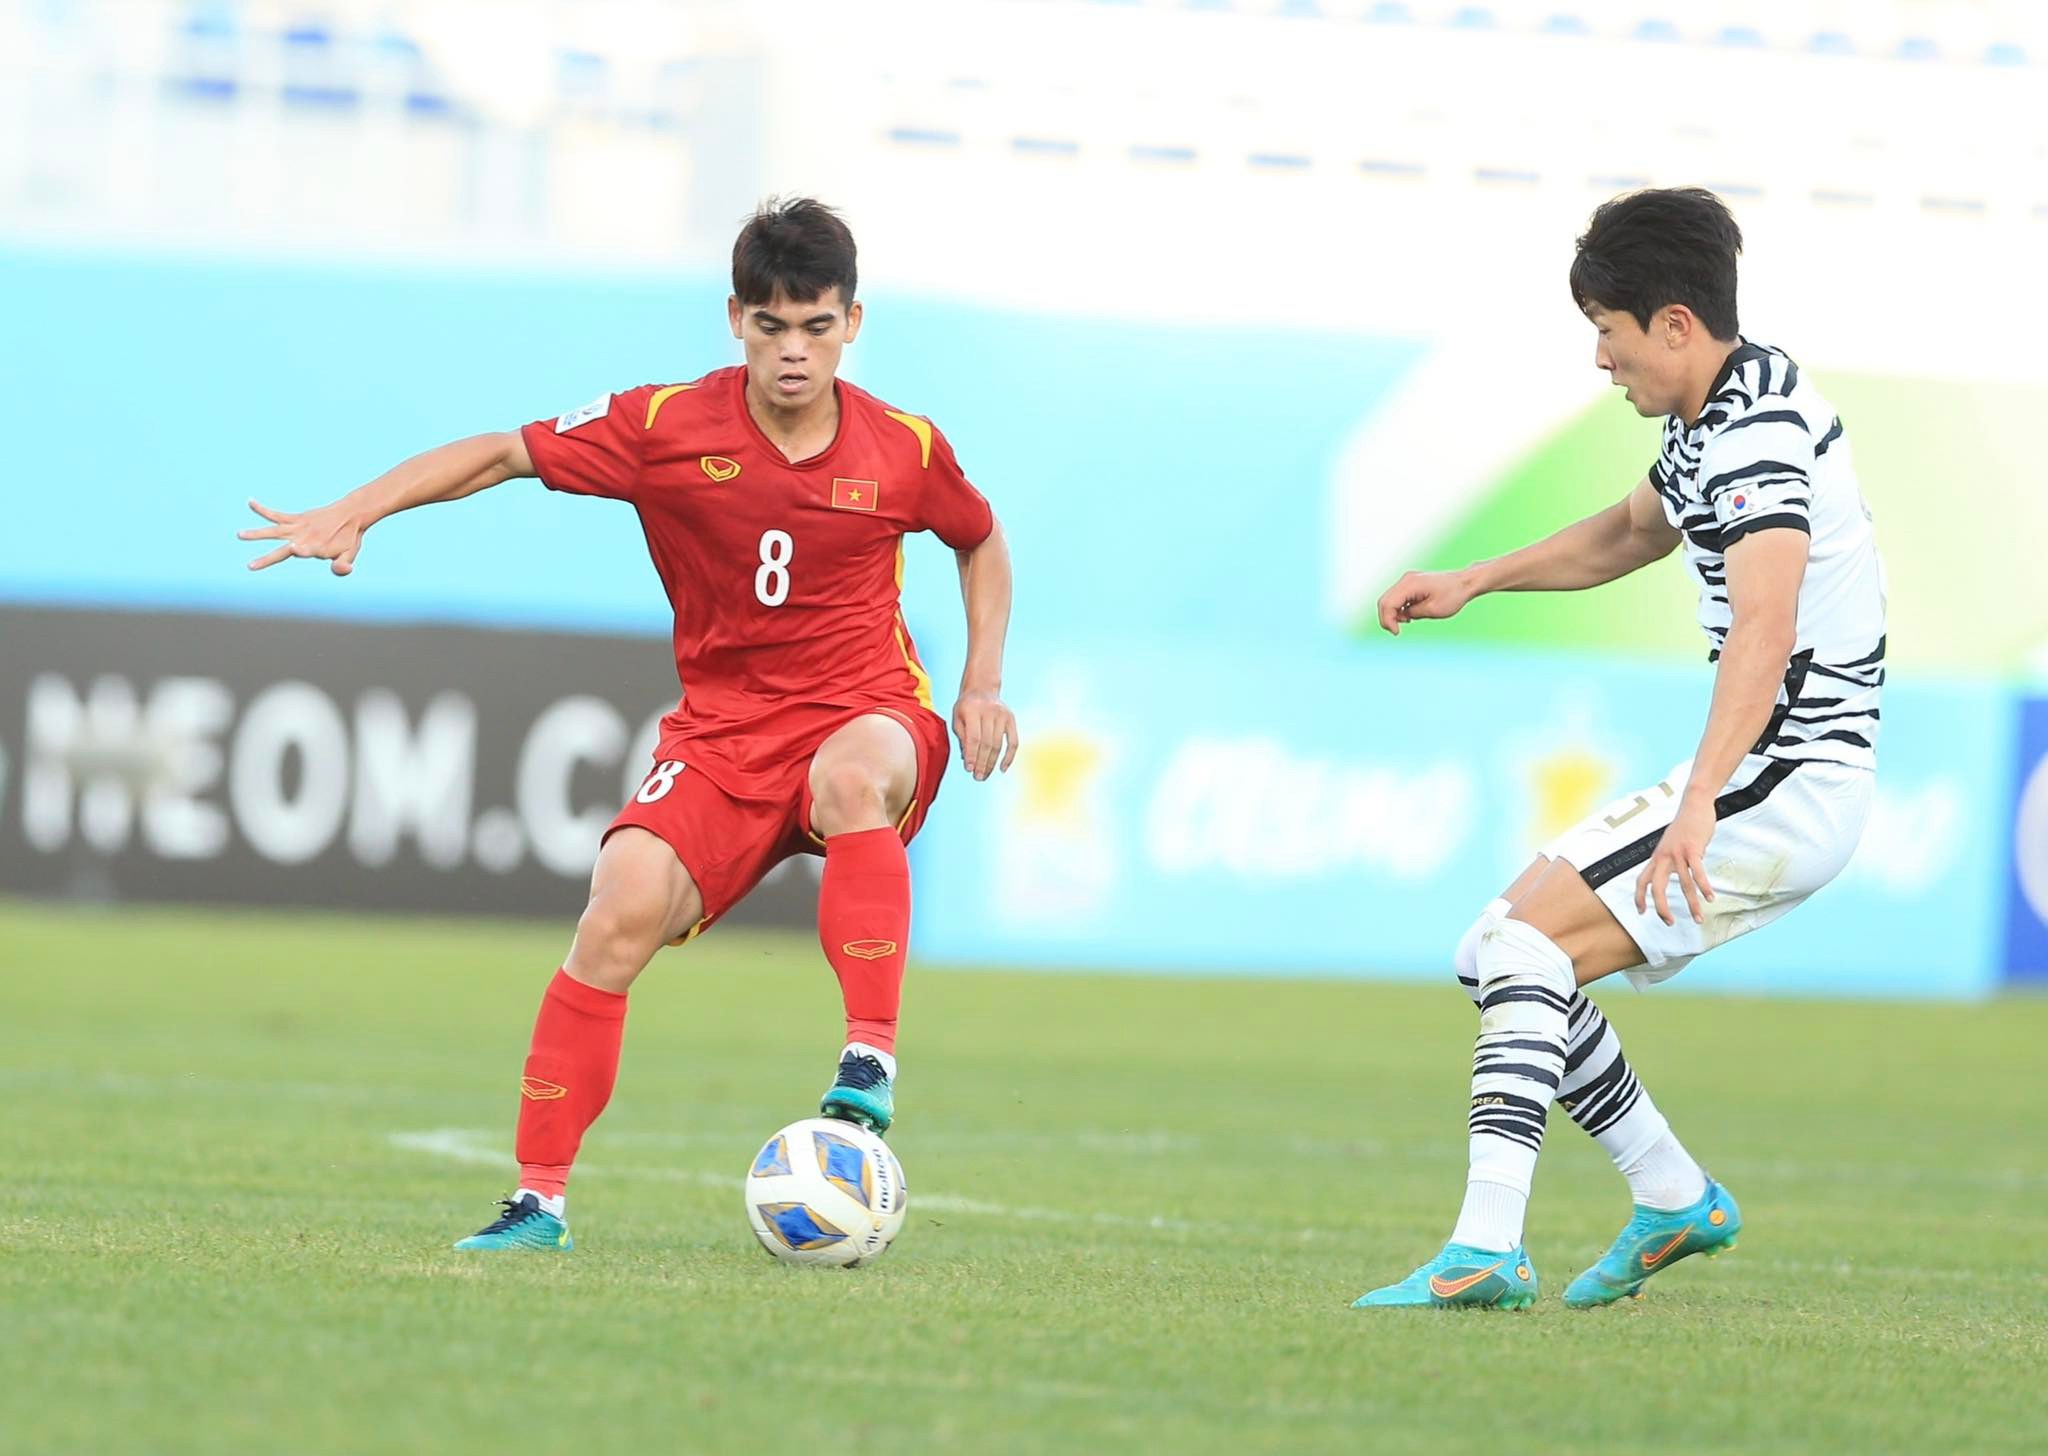 Văn Khang được bình chọn là cầu thủ xuất sắc nhất trận U23 Việt Nam - U23 Hàn Quốc - Ảnh: Quỳnh Anh 